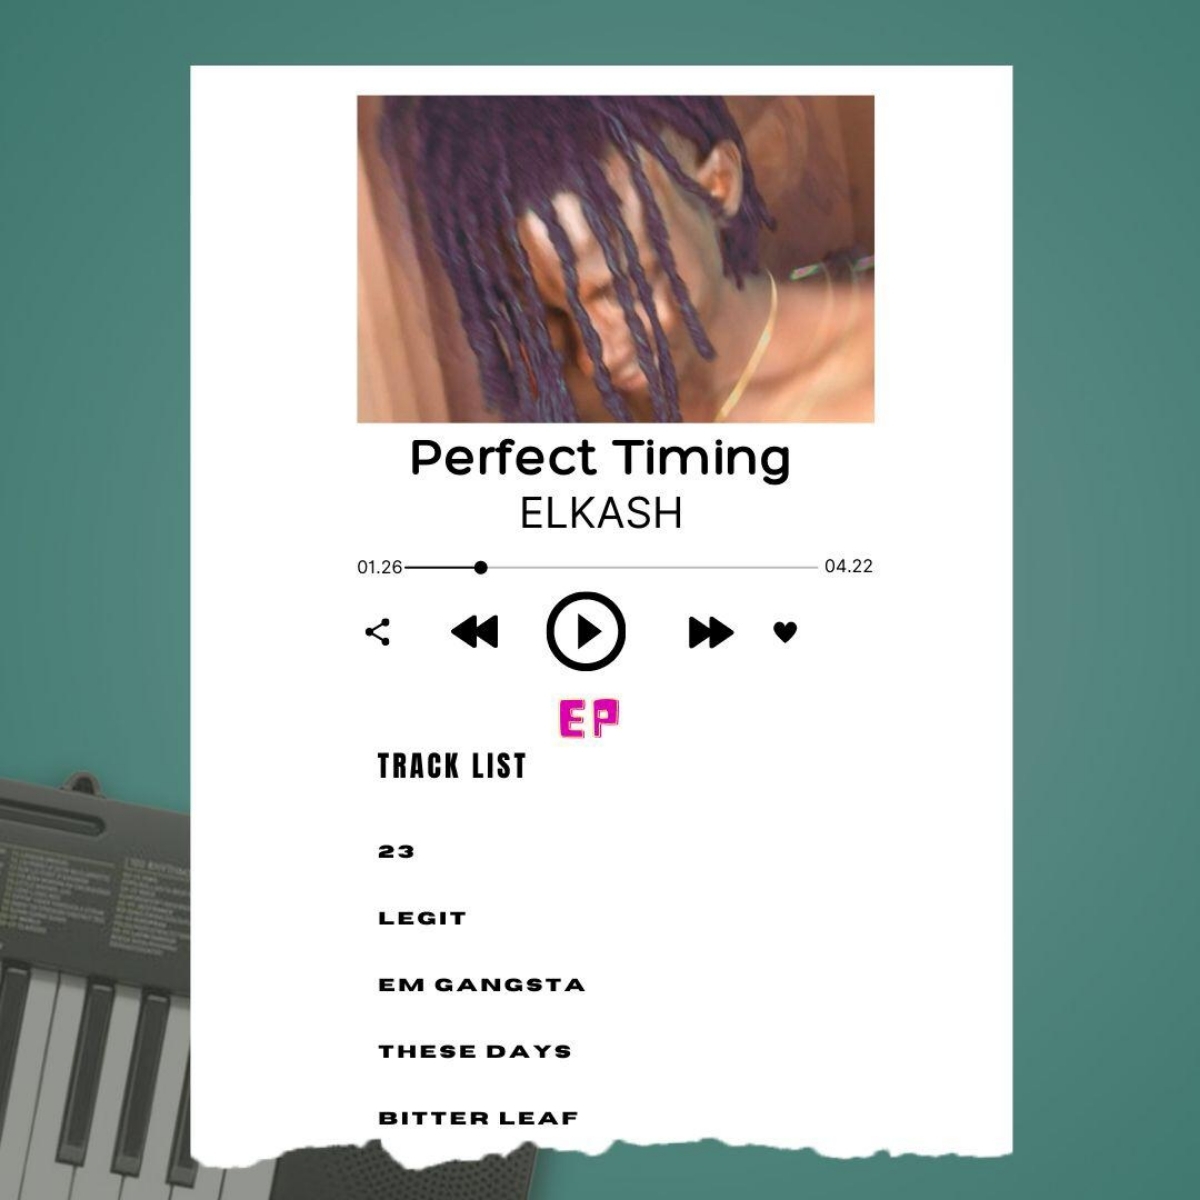 Elkash – Perfect Timing EP